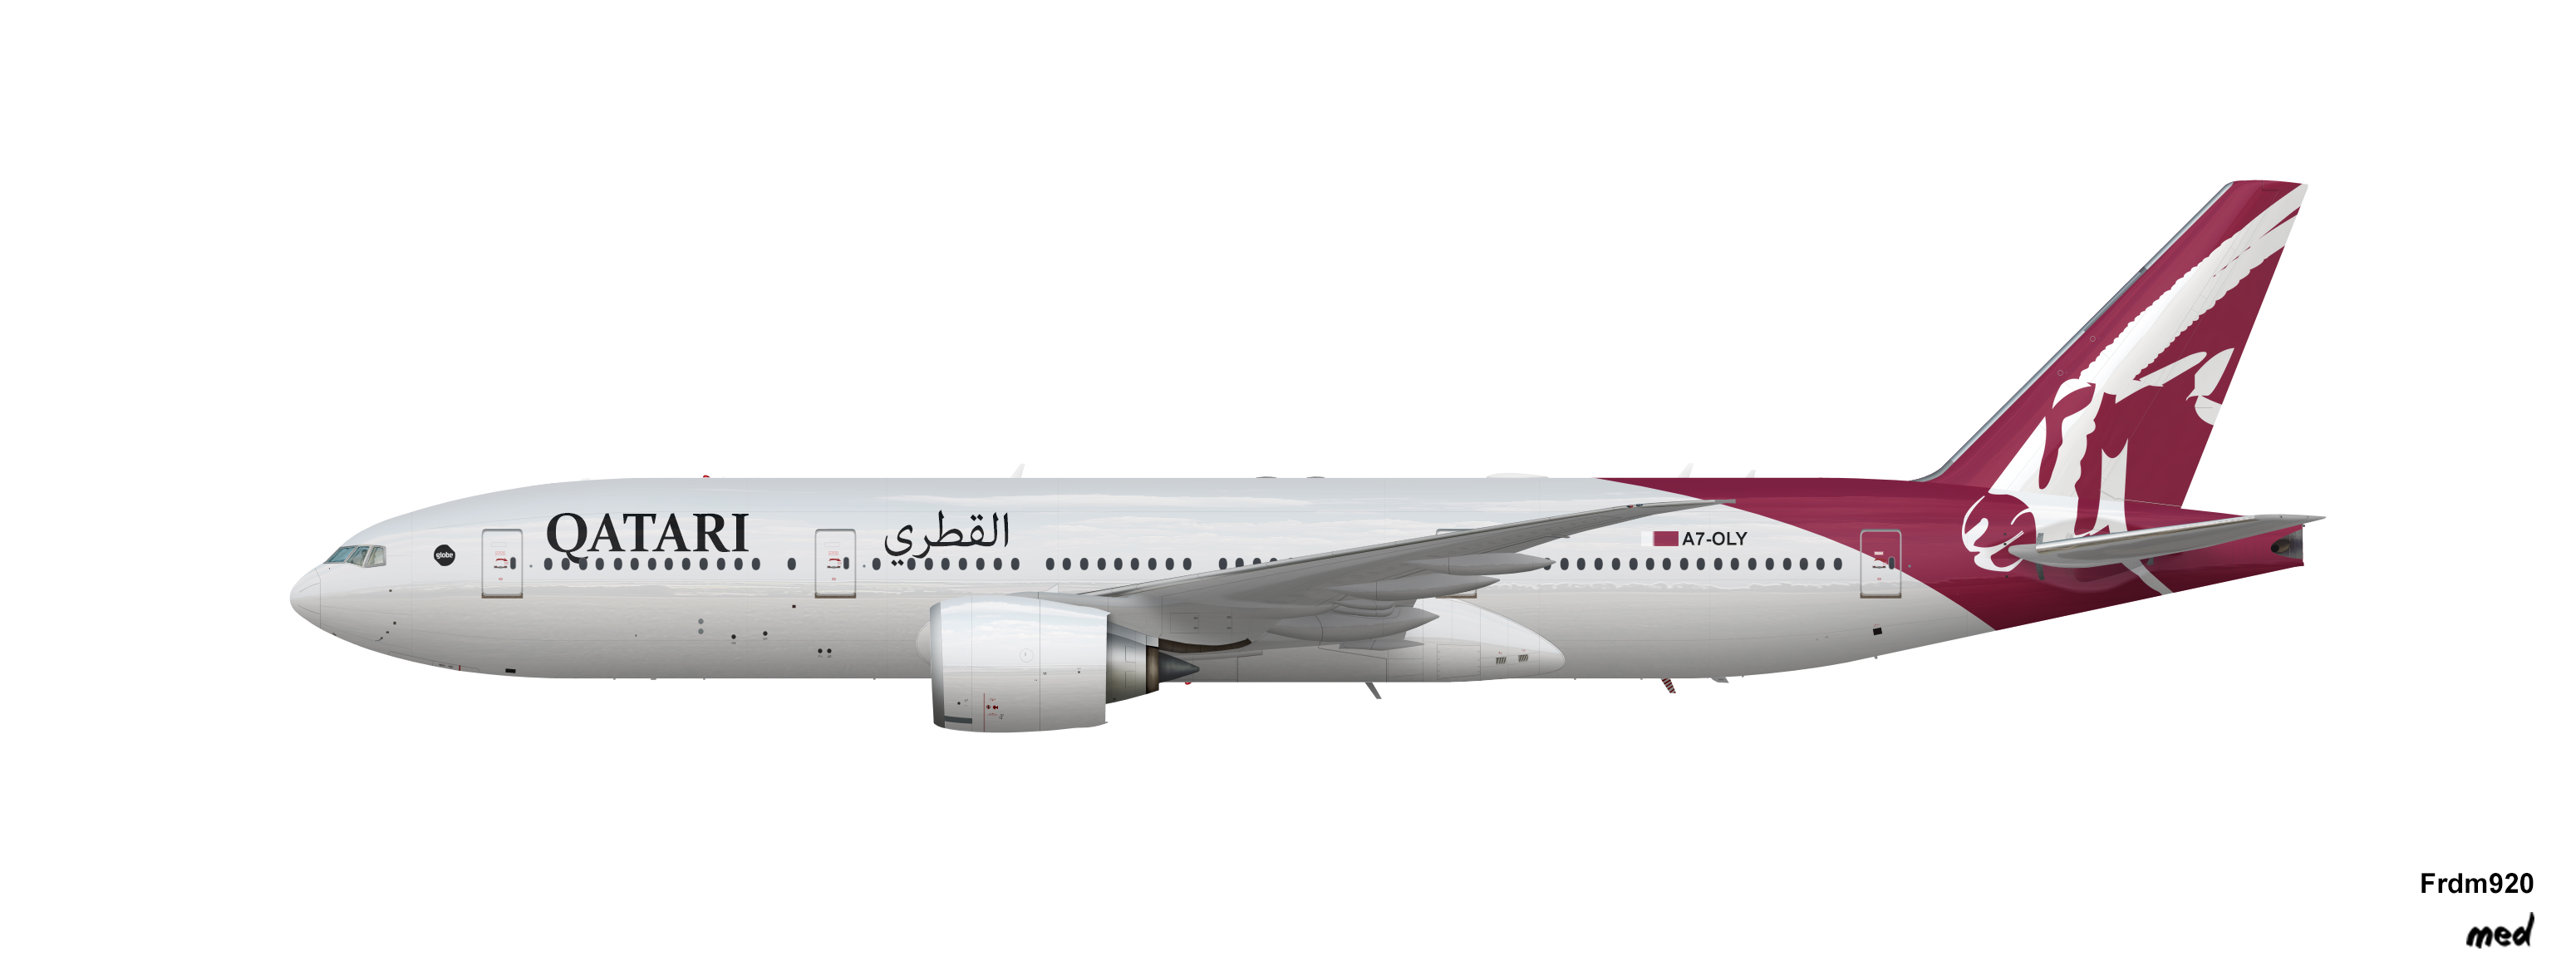 Boeing 777-200 Qatari V1